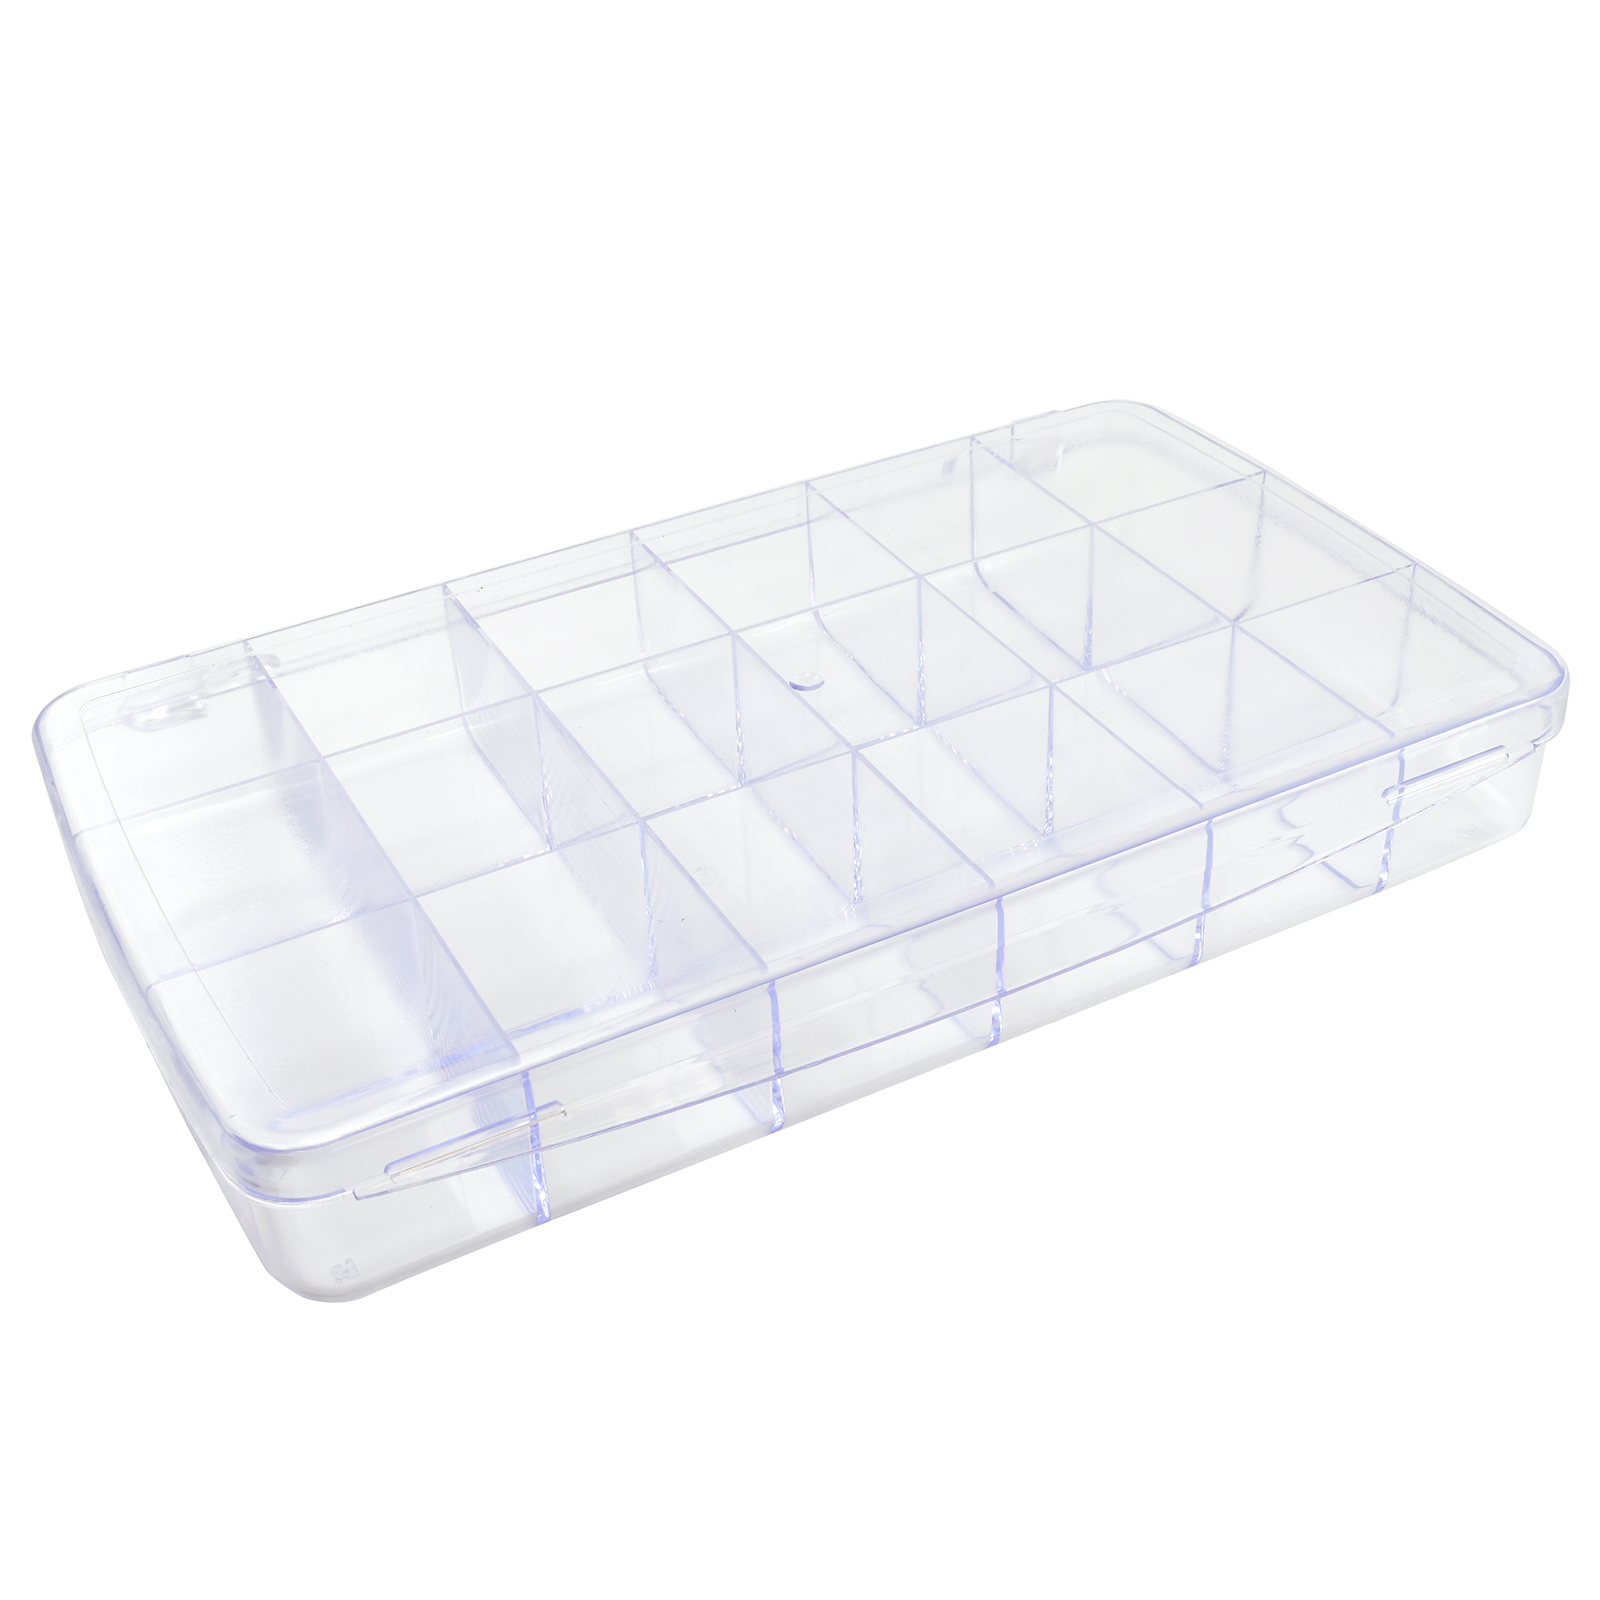 24 Compartment Plastic Storage Box